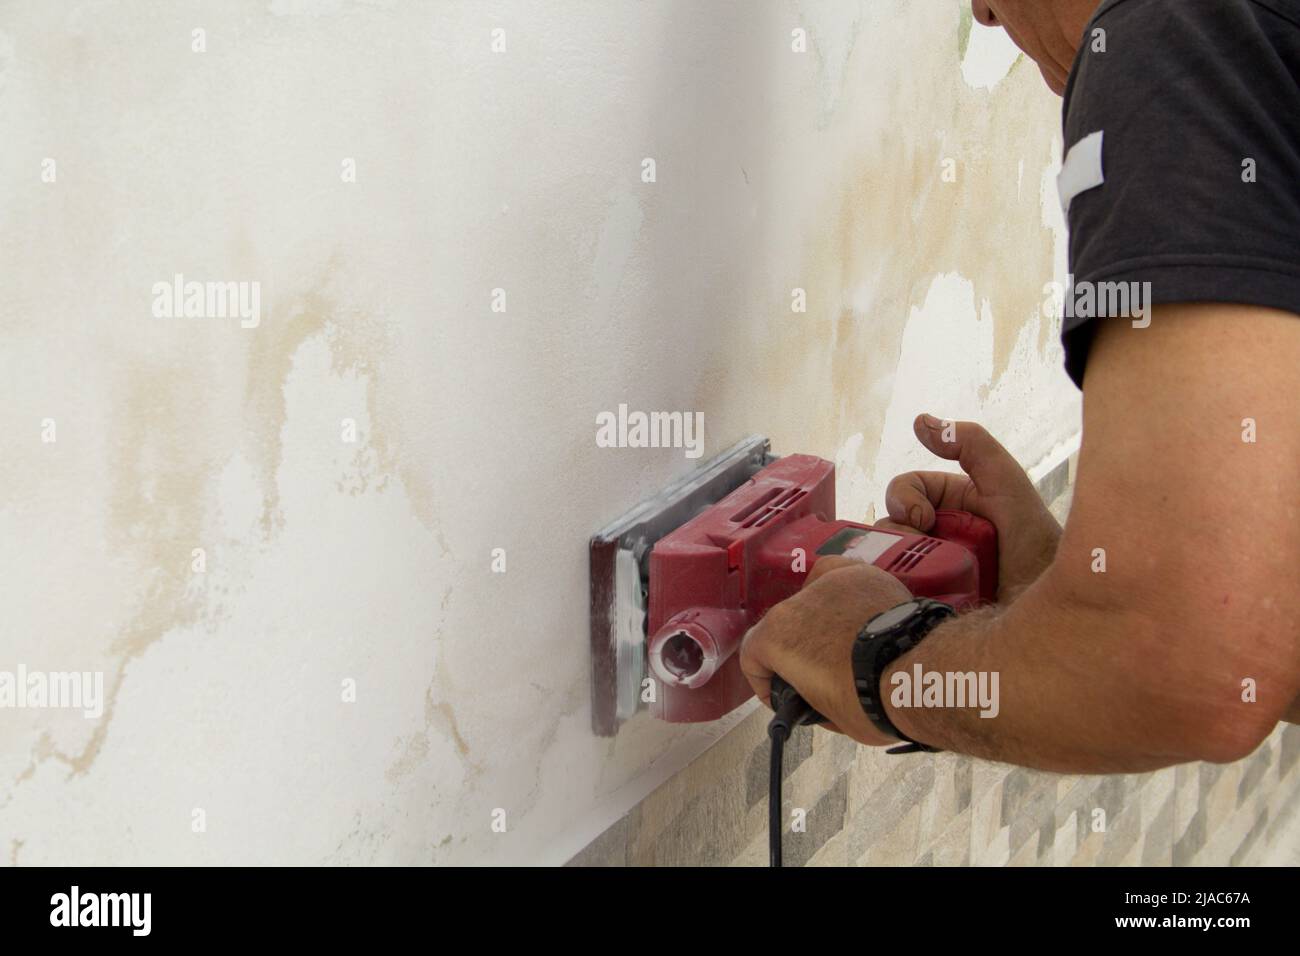 Bild der Hände eines Handwerkers, der mit einer Schleifmaschine Putz und  Schimmel von einer Wand entfernt. Hinweis auf Probleme der Luftfeuchtigkeit  Stockfotografie - Alamy